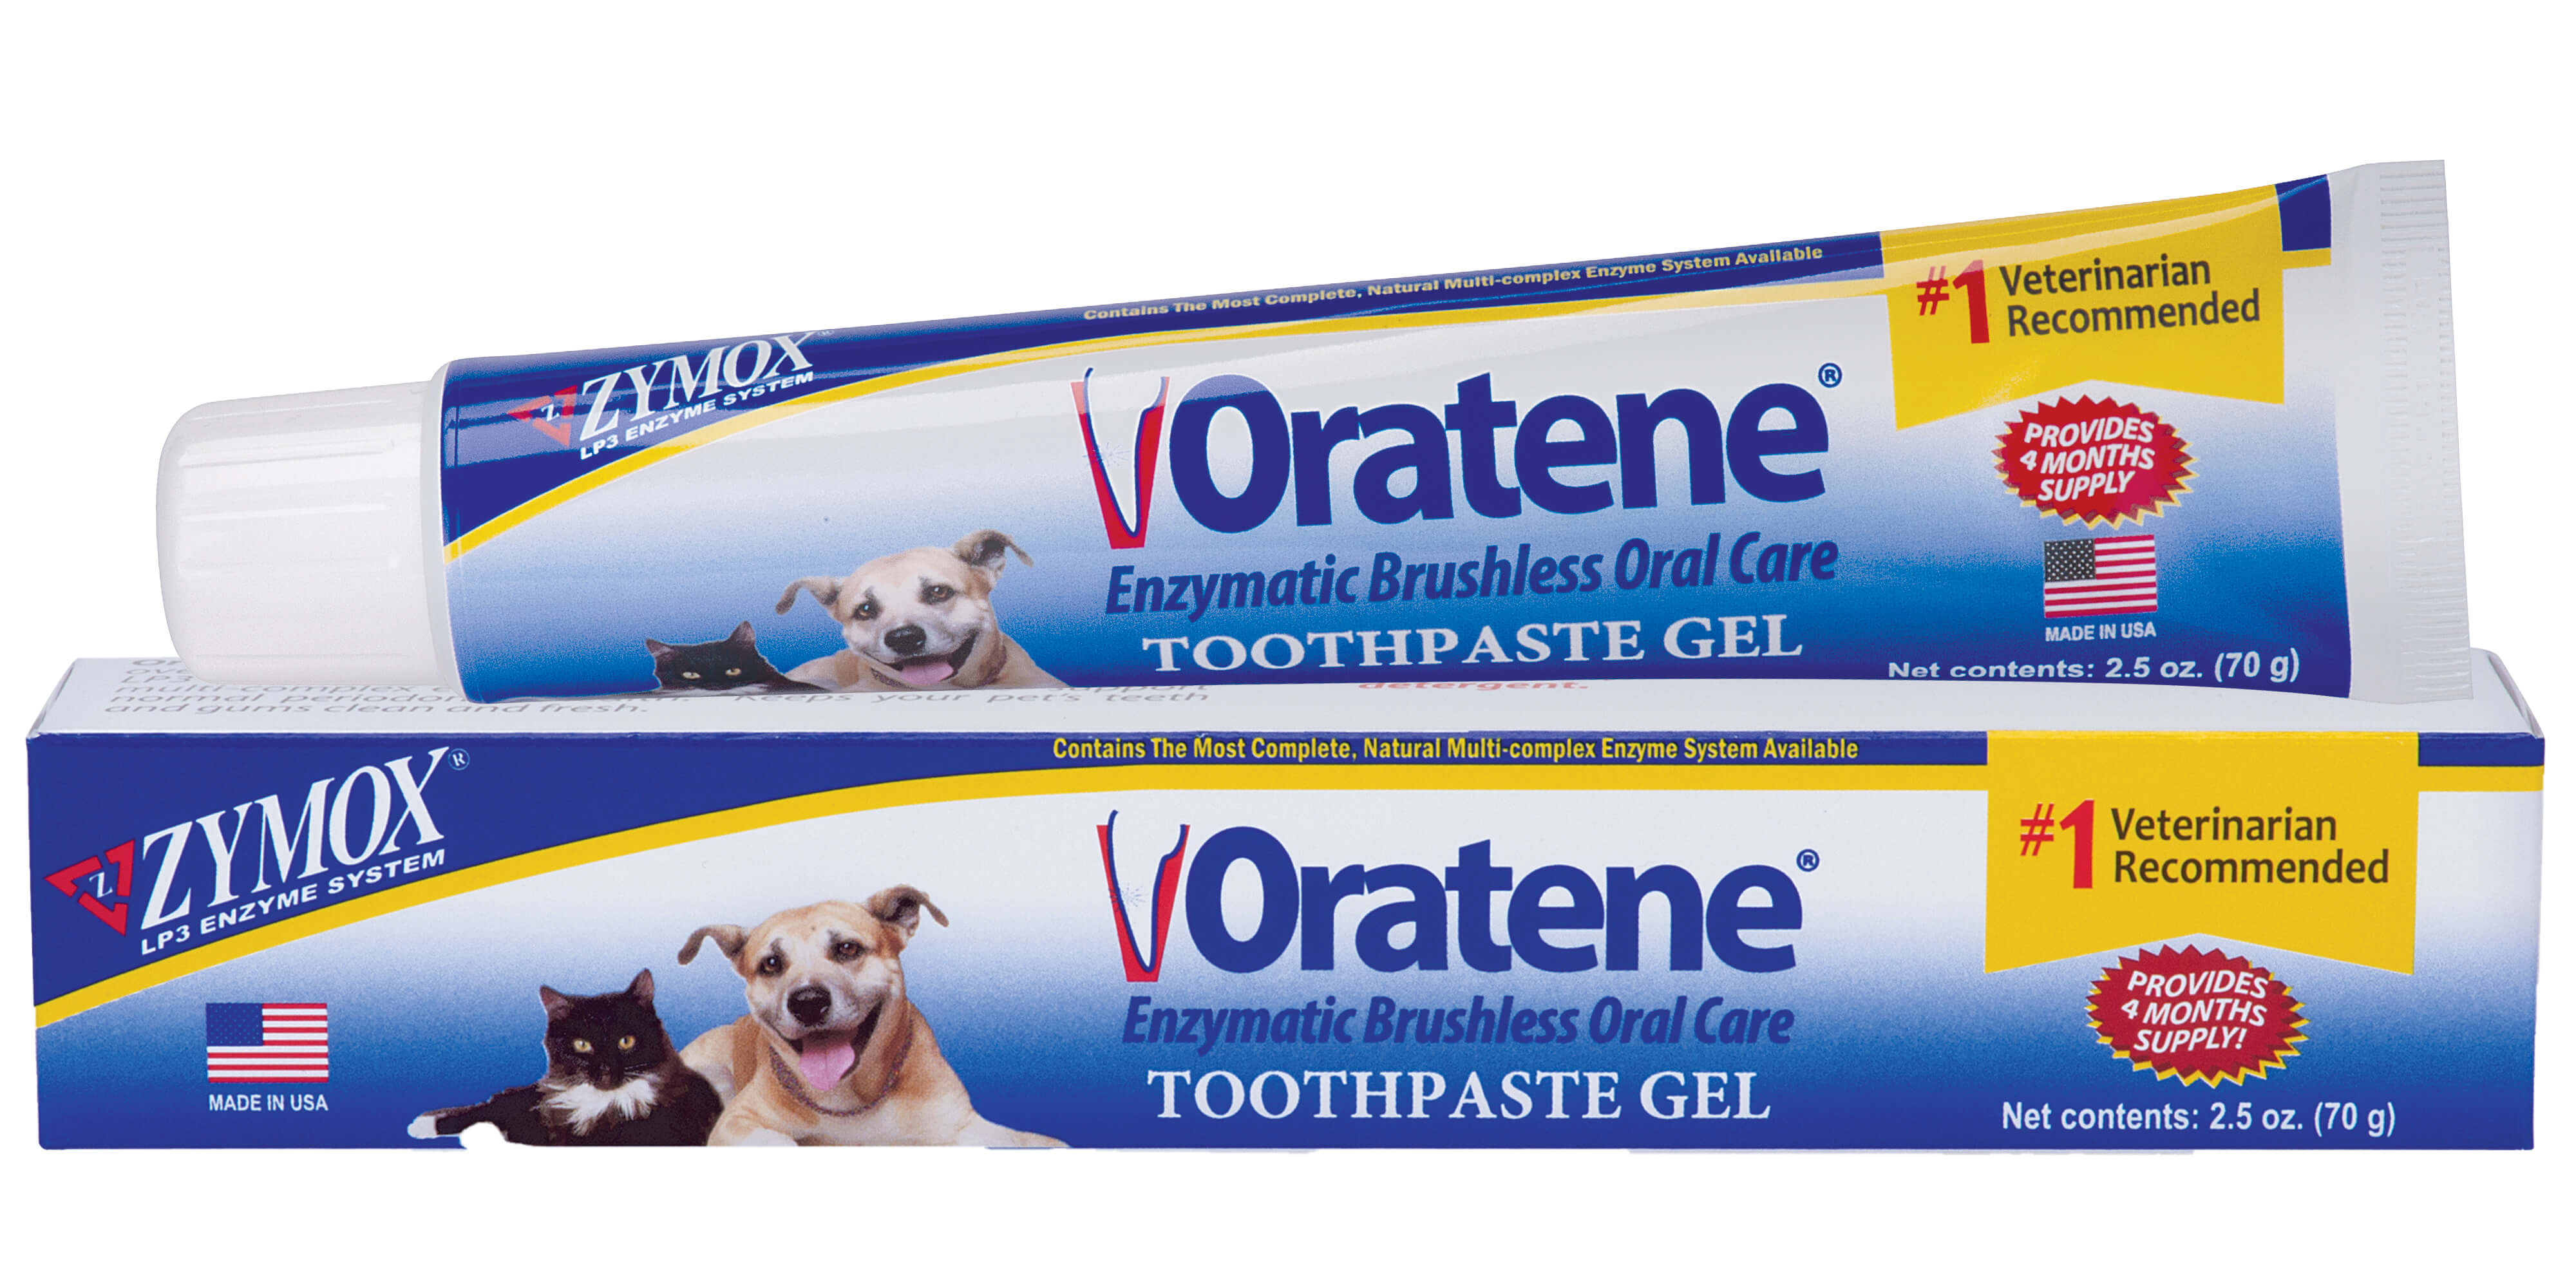 Zymox oratene brushless toothpaste gel